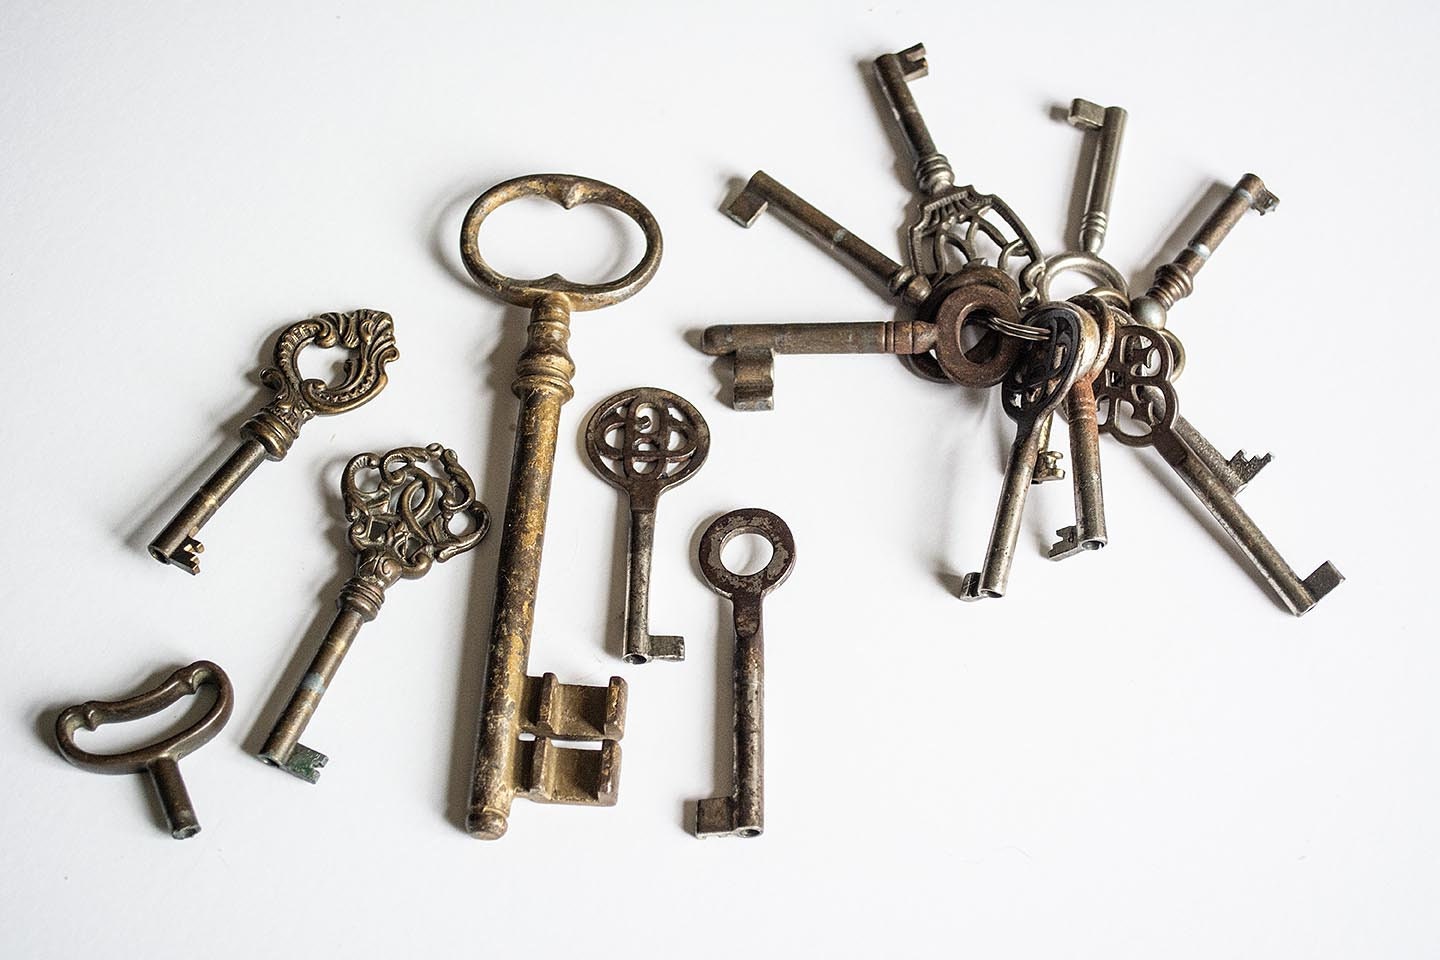 Schlüsselkasten, Schlüsselbox, Key box, Steampunk